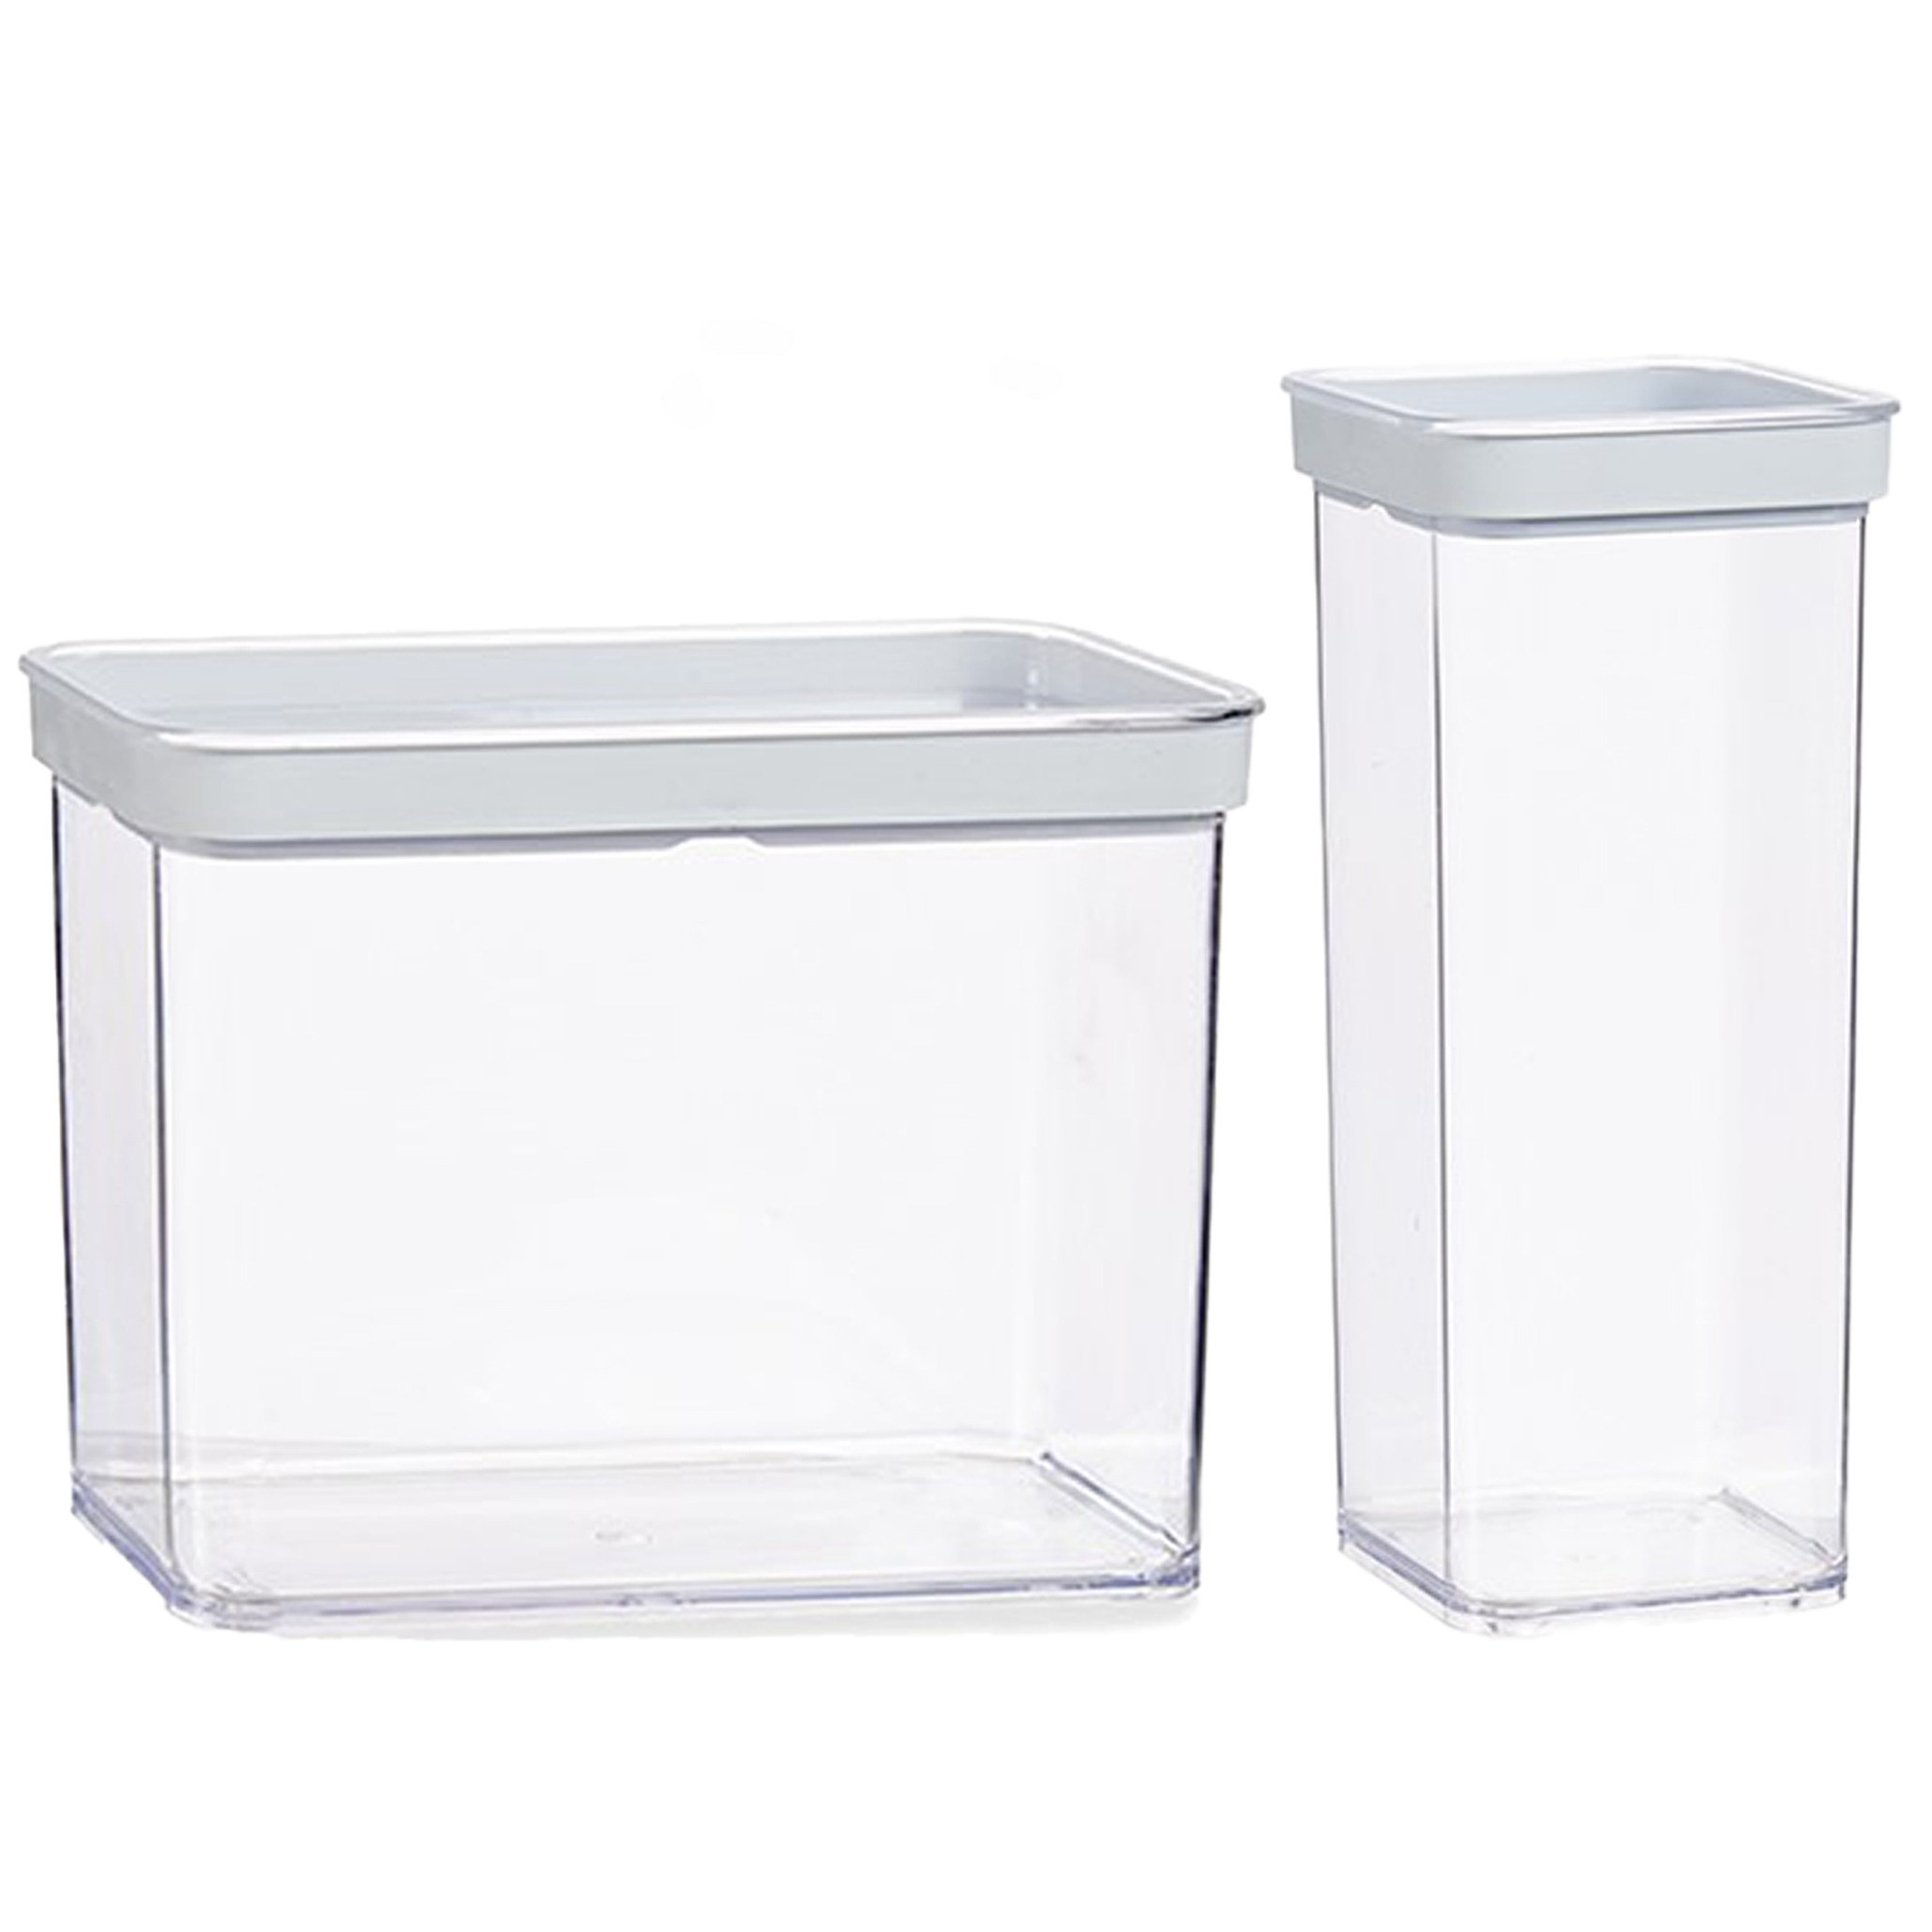 Gondol Plastics 7x stuks keuken voorraad potten/bakjes set met deksel 2.2 en 1.5 liter -